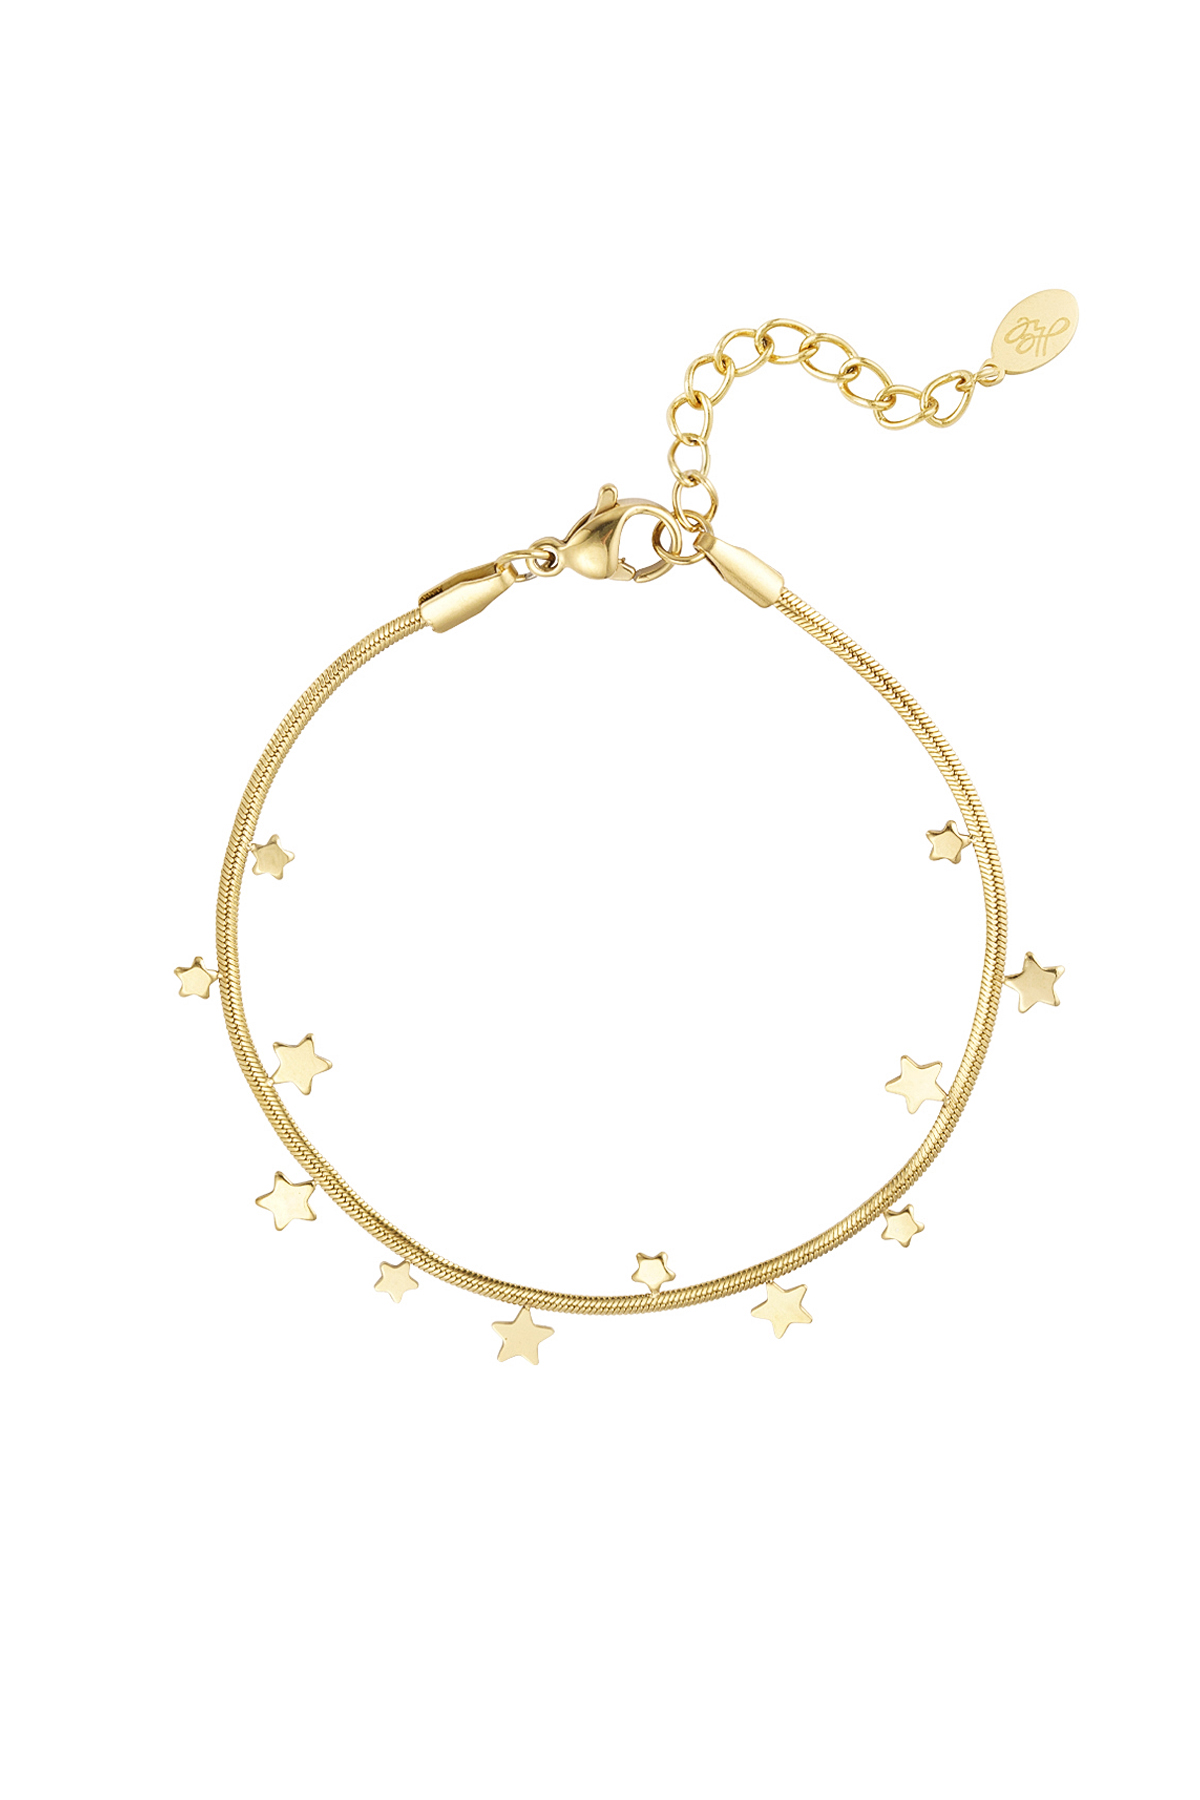 Bracelet stars - gold h5 